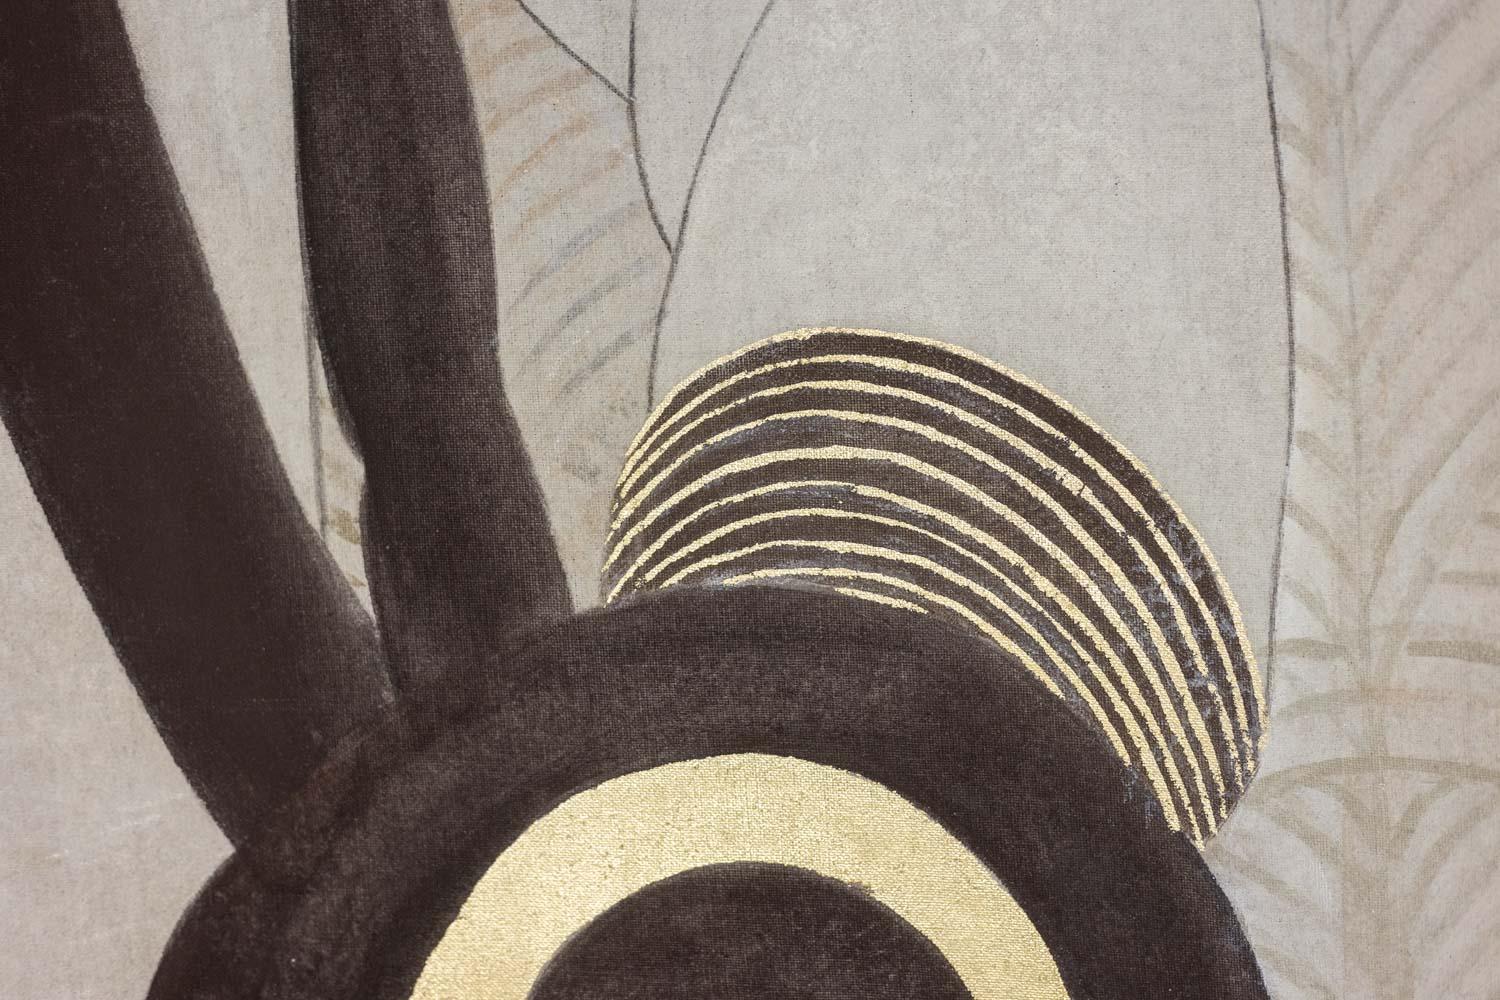 Toile peinte ou panneau décoratif de style Art déco, représentant une femme debout, le visage de trois quarts, enveloppée dans un grand manteau beige assorti à sa coiffe rayée et dont la manchette est ornée de motifs concentriques en noir et or. Le